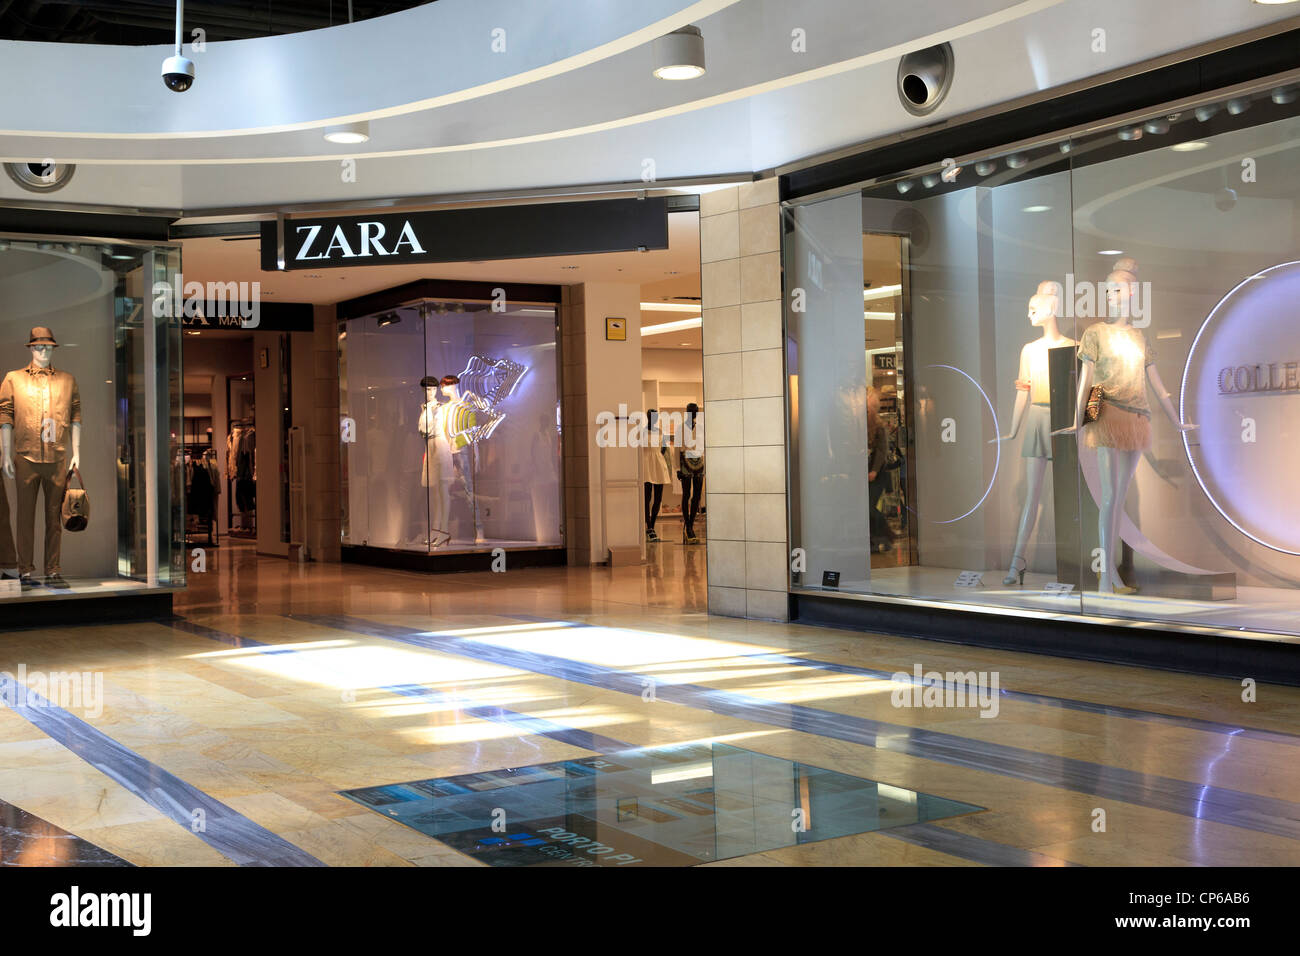 Zara shopping store in Palma, Majorca Stock Photo - Alamy